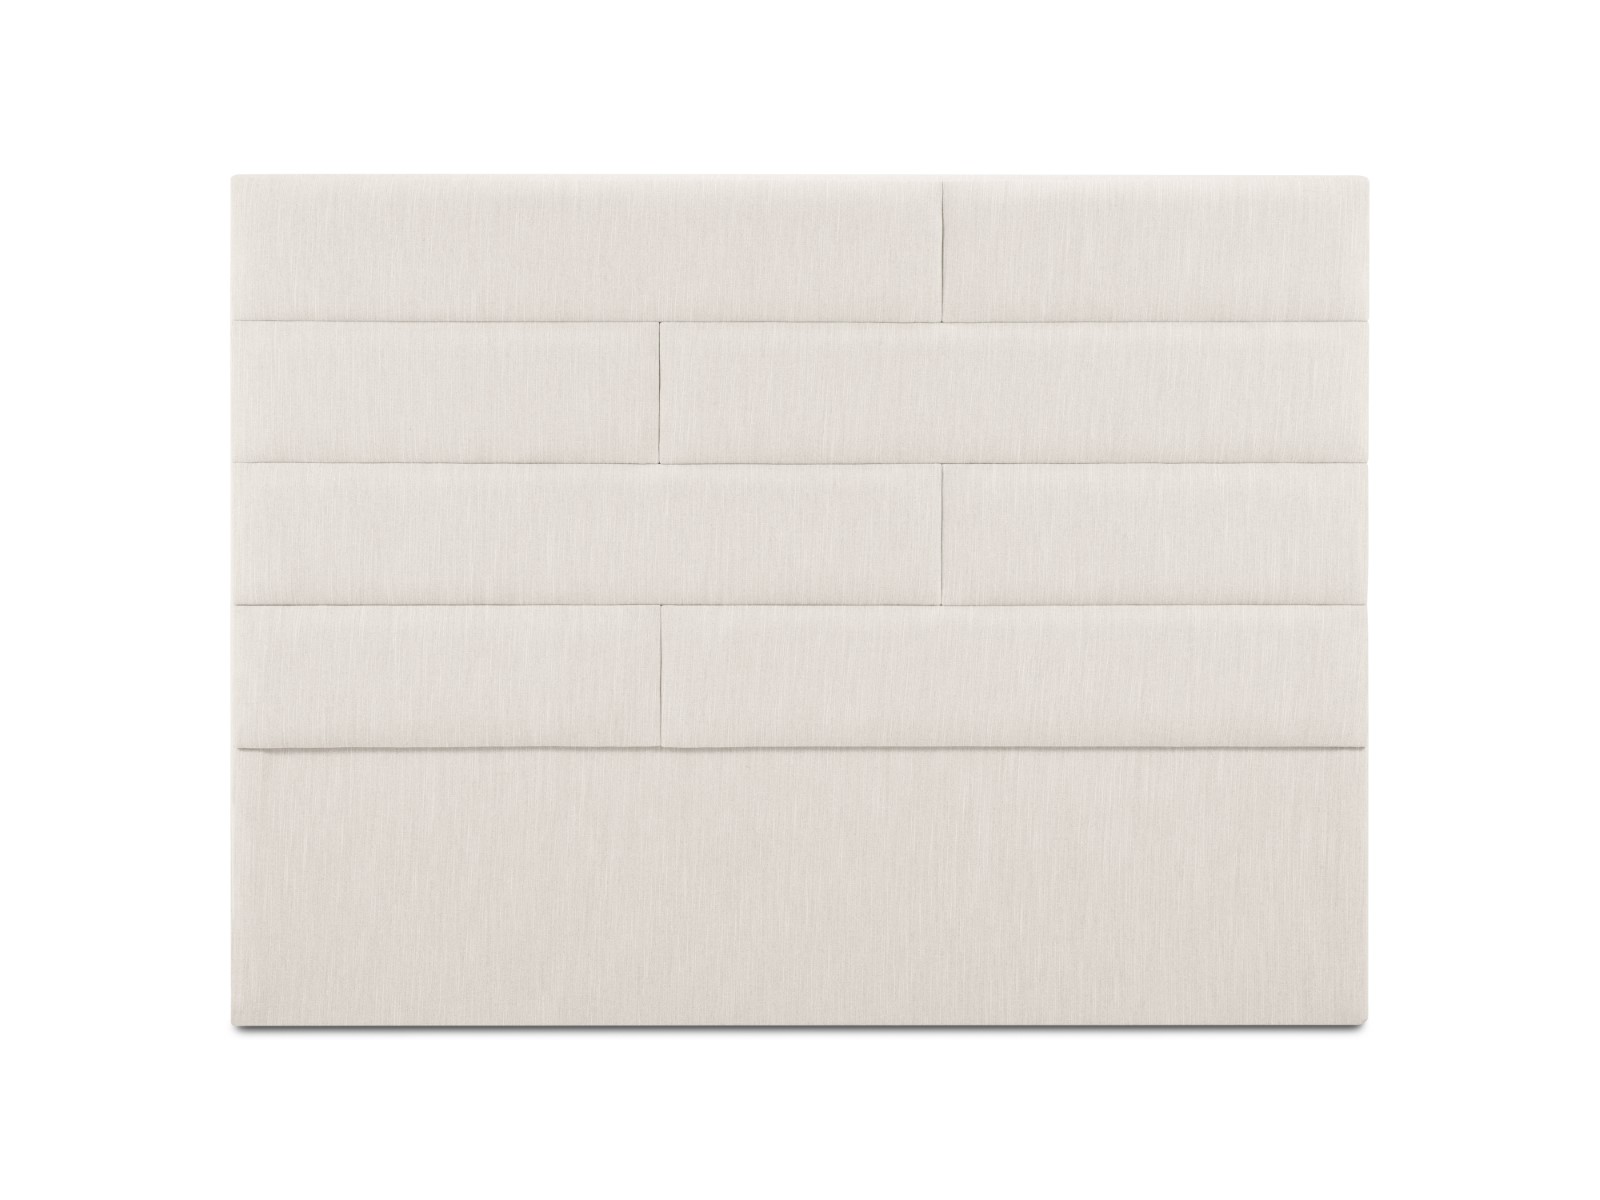 Sängynpääty (ny) kosmopoliittinen design vaalea beige, strukturoitu kangas, 120x10x140